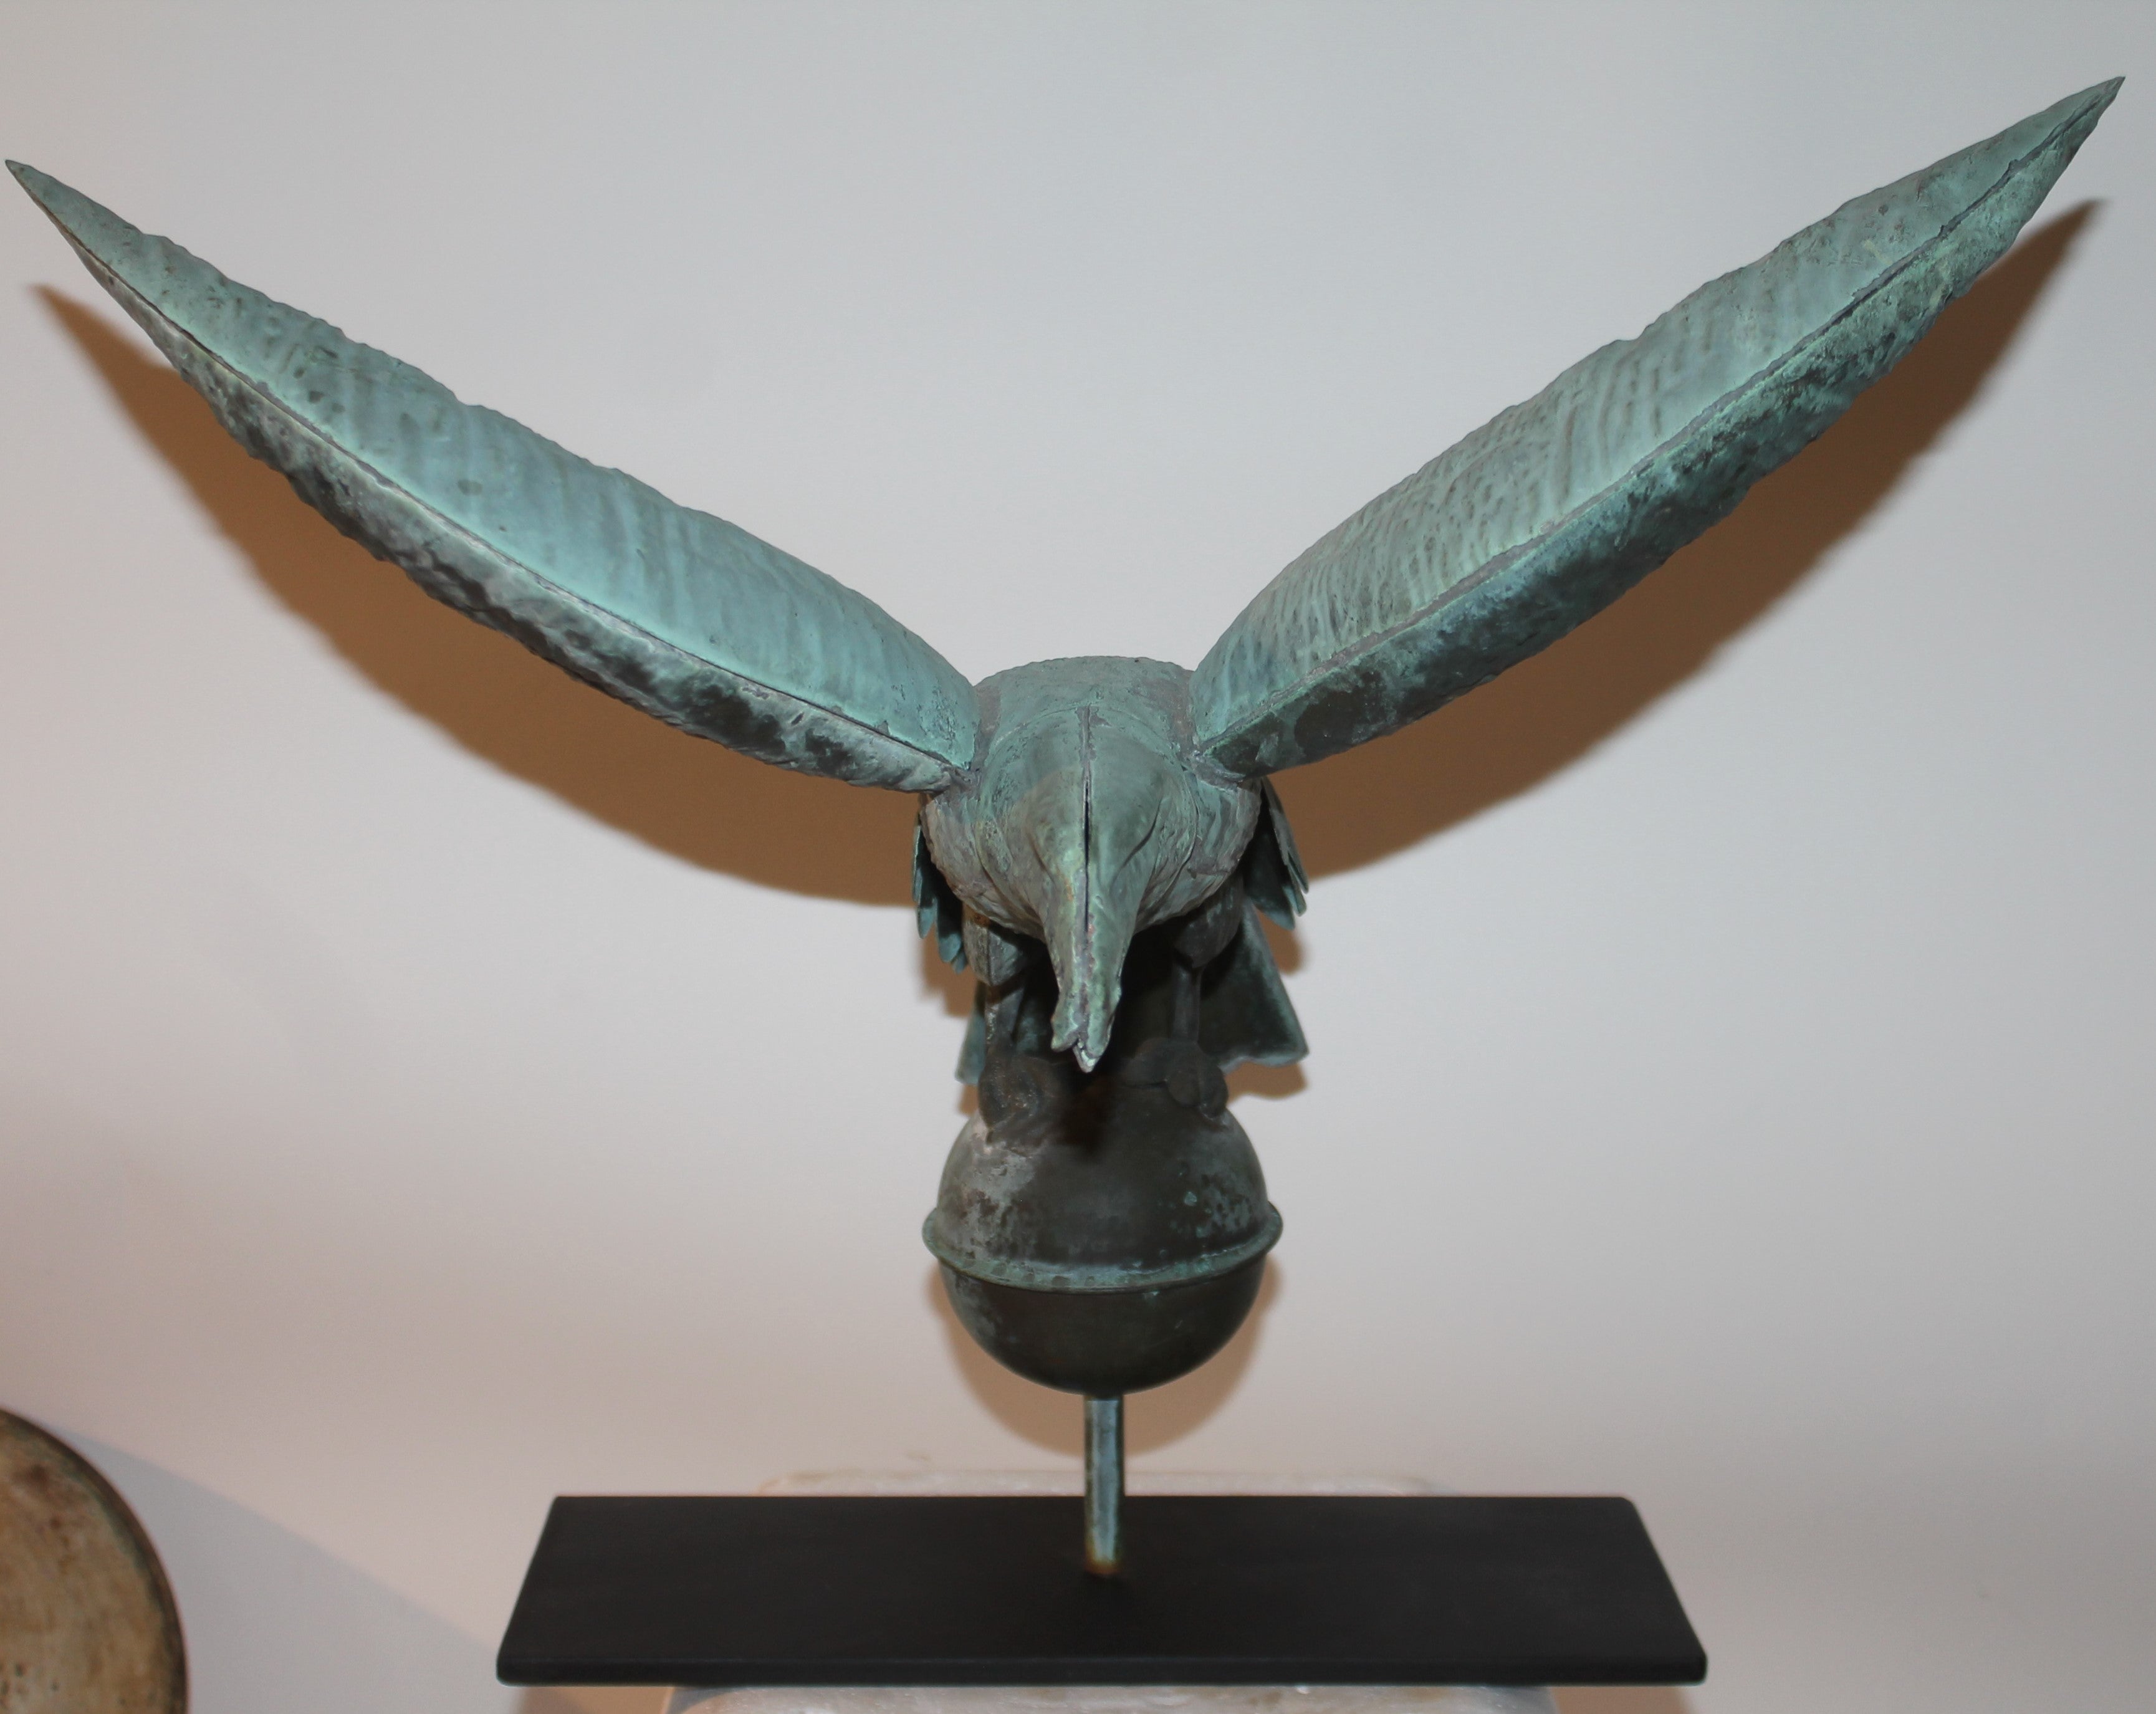 Diese schöne, patinierte Adler-Wetterfahne aus dem 19. Jahrhundert wurde in New England gefunden. Der Eisensockel ist eine Sonderanfertigung. Der Zustand ist sehr gut auf dieser frühen fein mit keine Dellen oder Löcher. Wunderbare, ungestörte